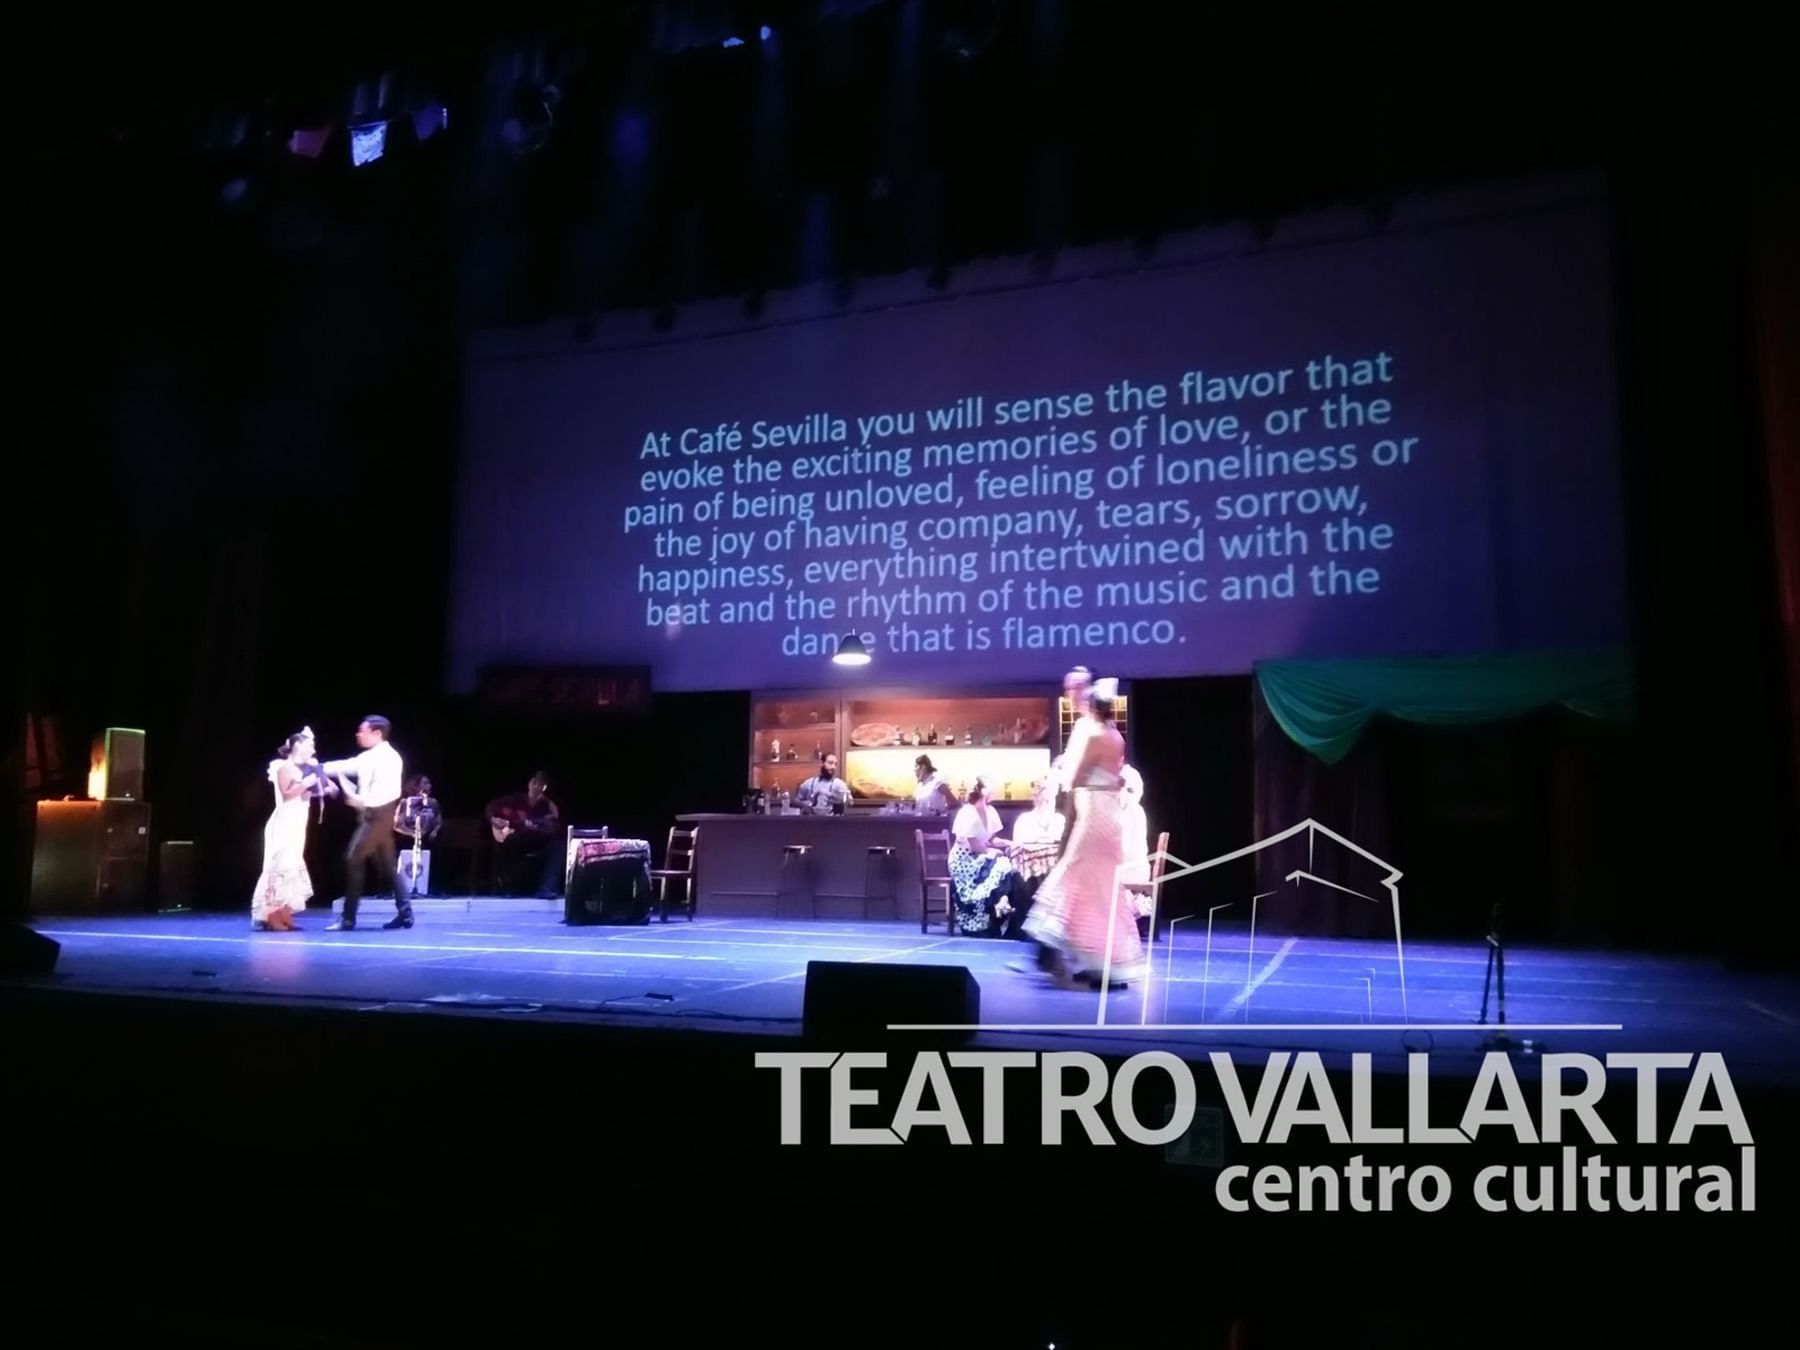 Teatro Vallarta